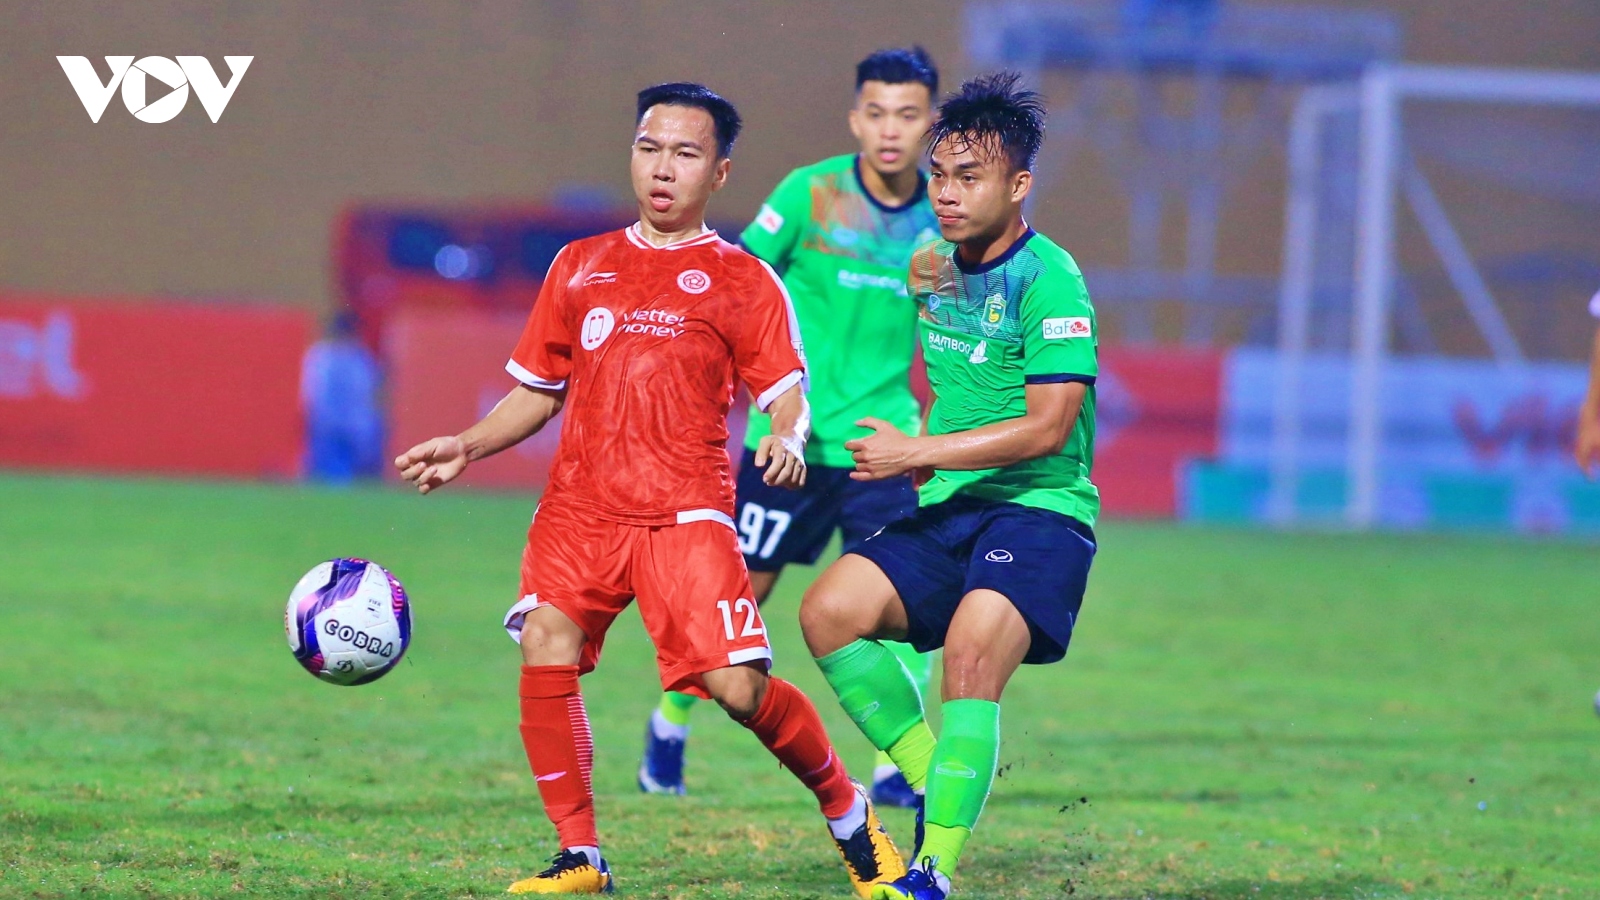 Thắng “bàn tay nhỏ” trước Cần Thơ, Viettel FC gặp Bình Định ở Cúp Quốc gia 2022